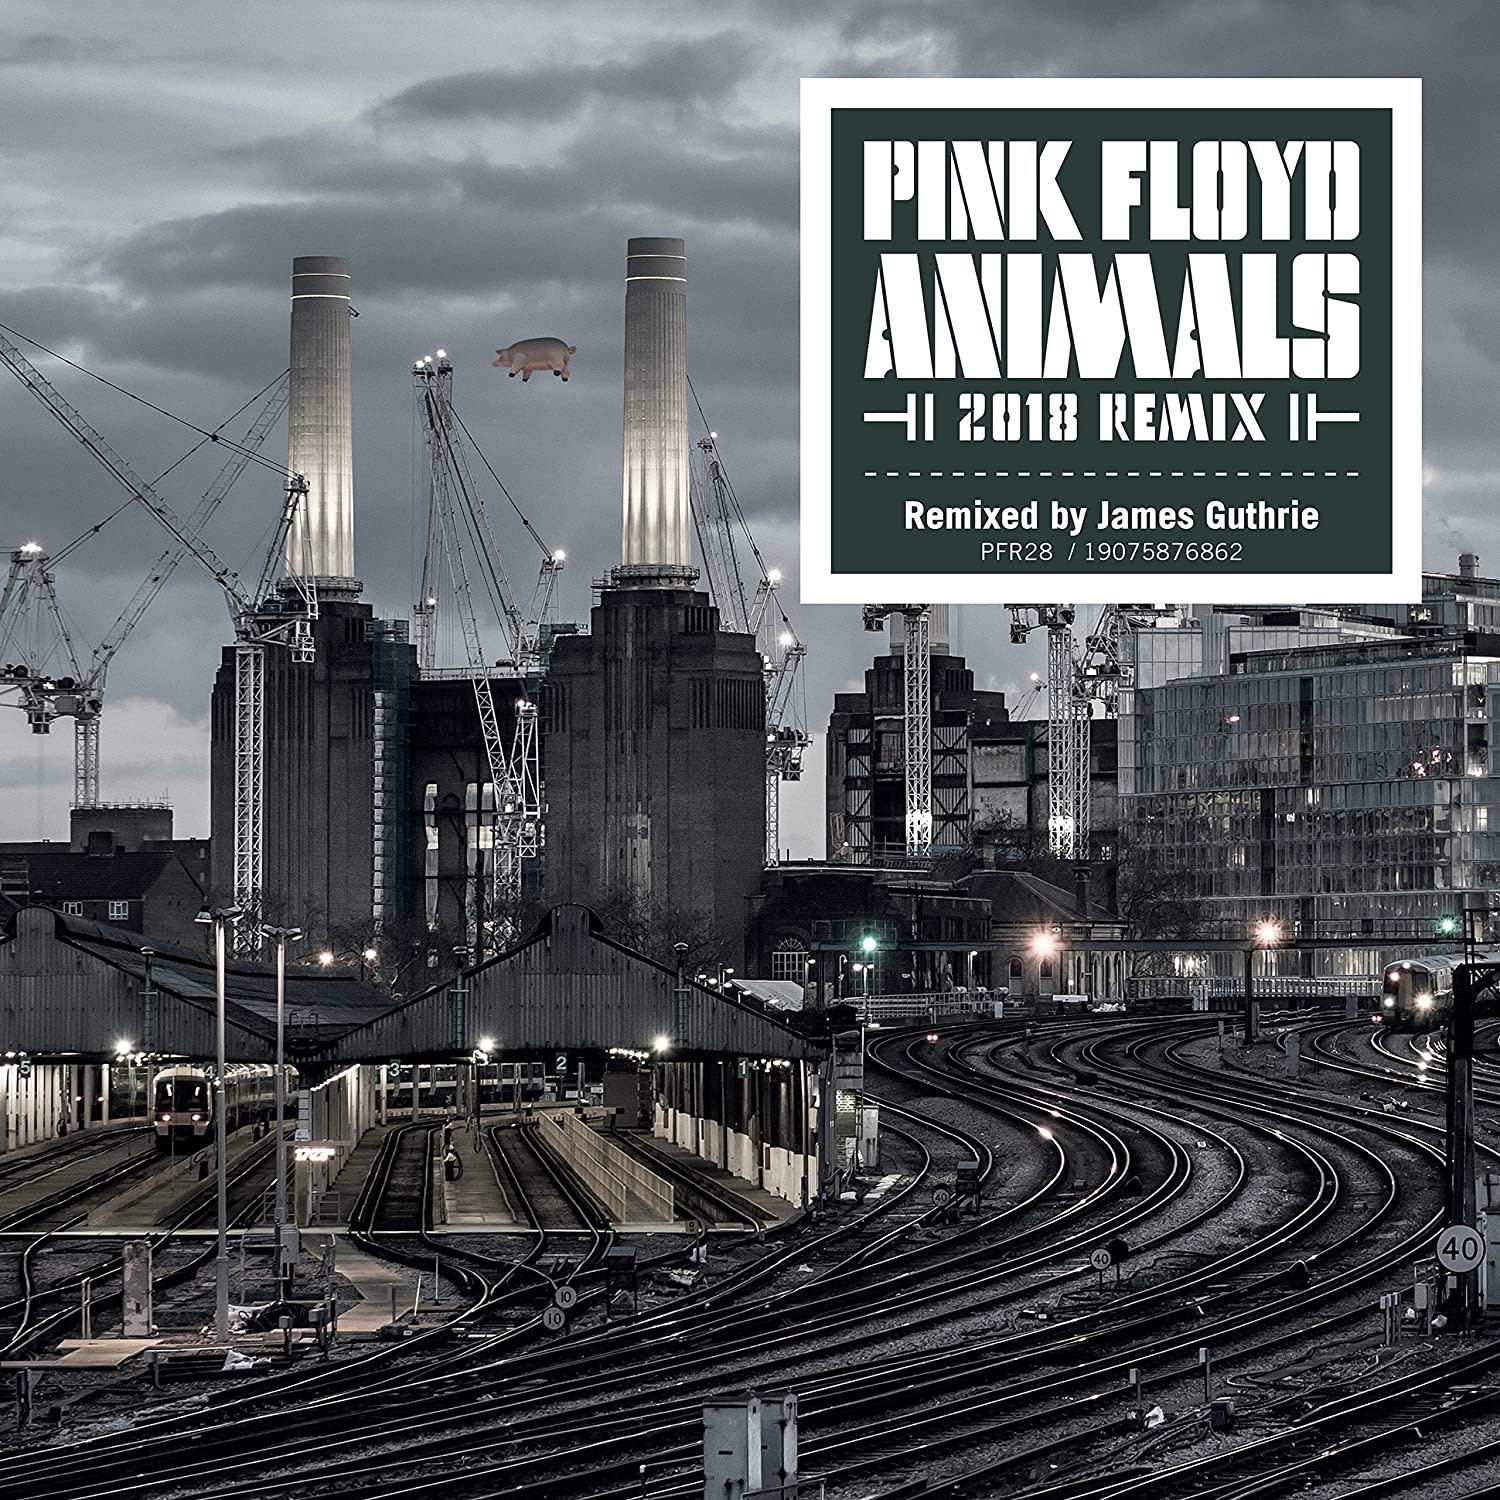 Pink Floyd - Animals (2018 Remix) [Vinyl] - Pop Music